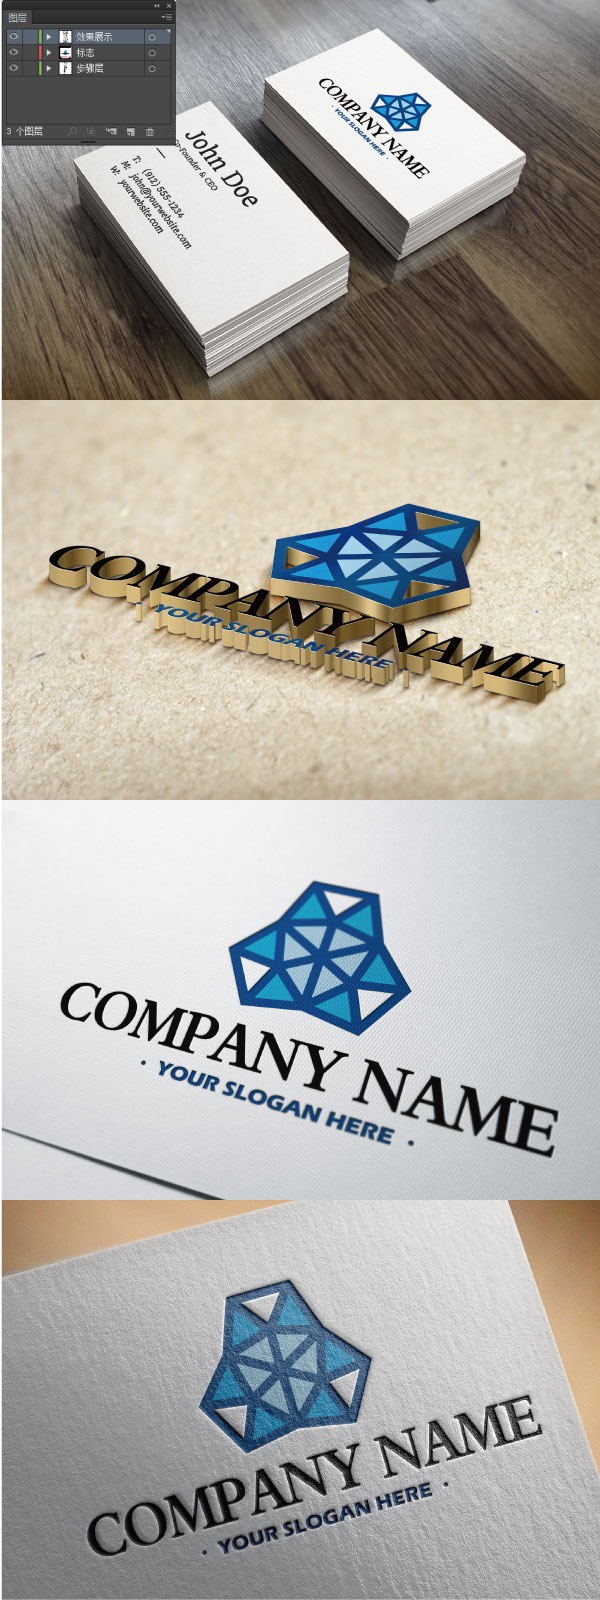 标志,企业logo商标设计